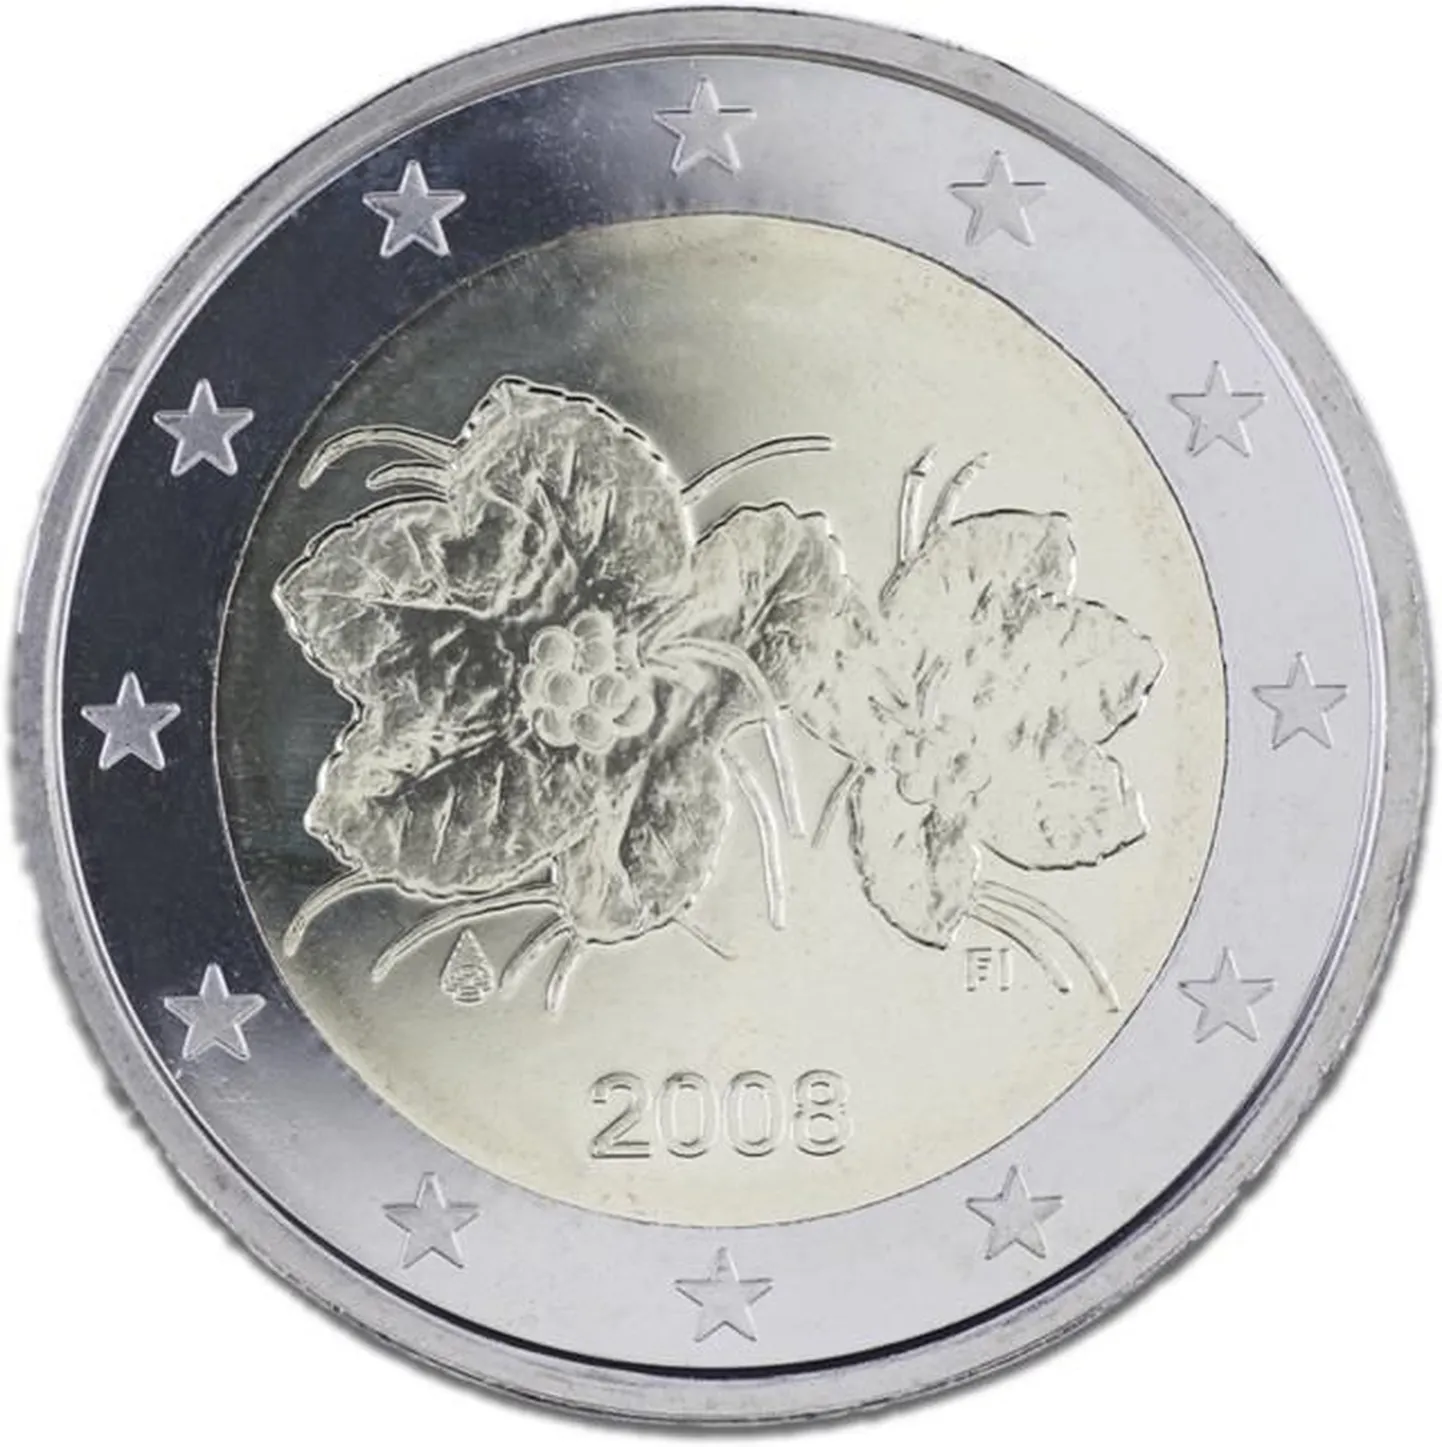 Soome kahe-eurone münt